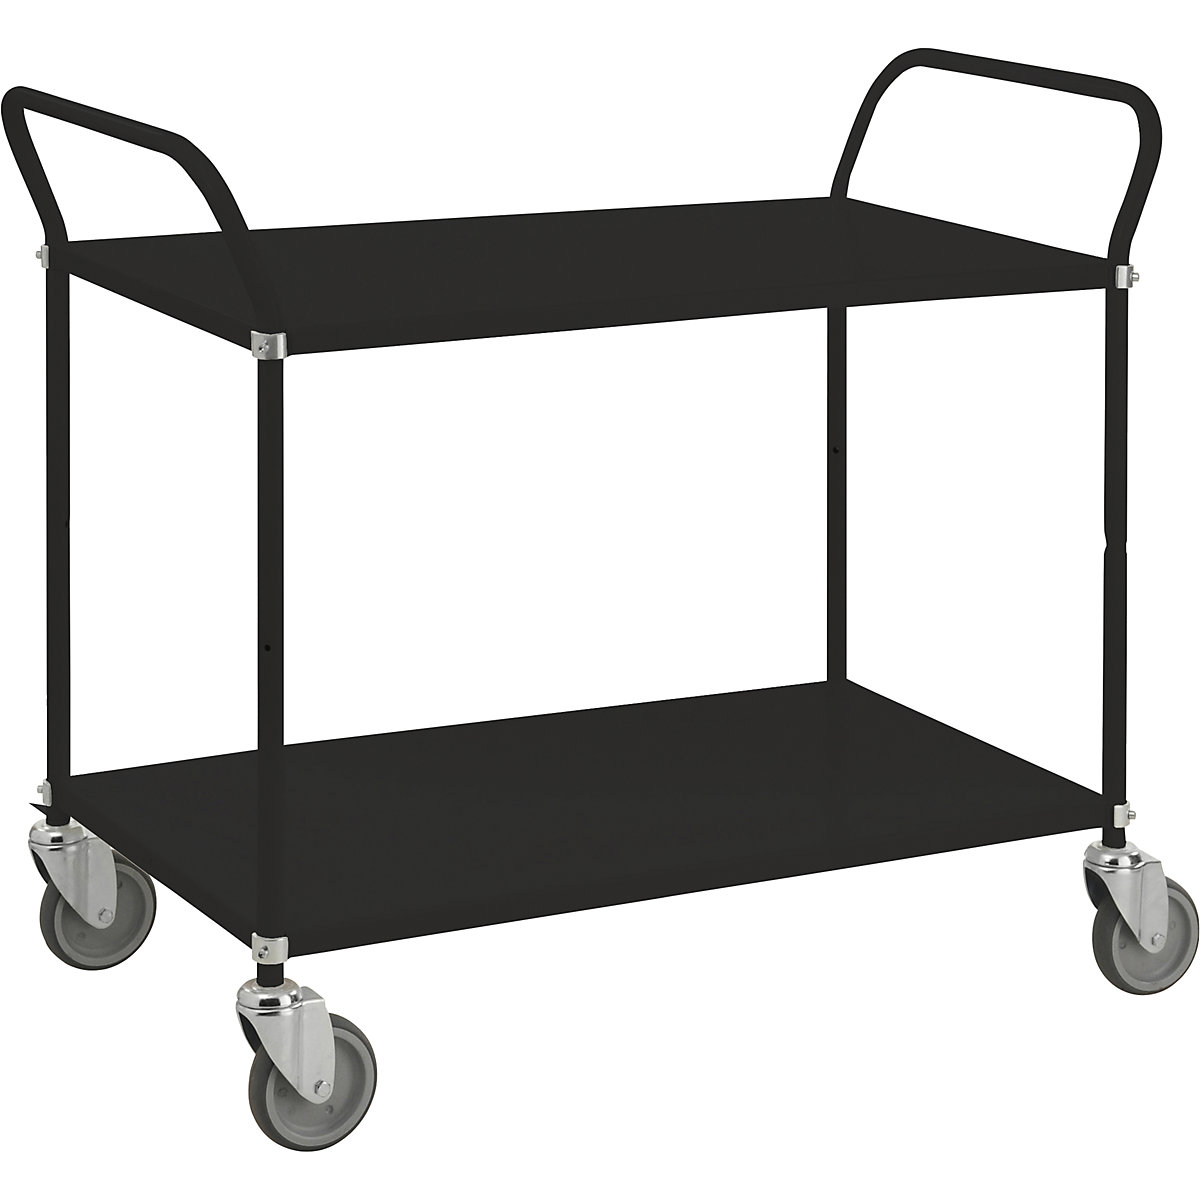 Črn transportni voziček – Kongamek, nosilnost 250 kg, 2 nivoja-1